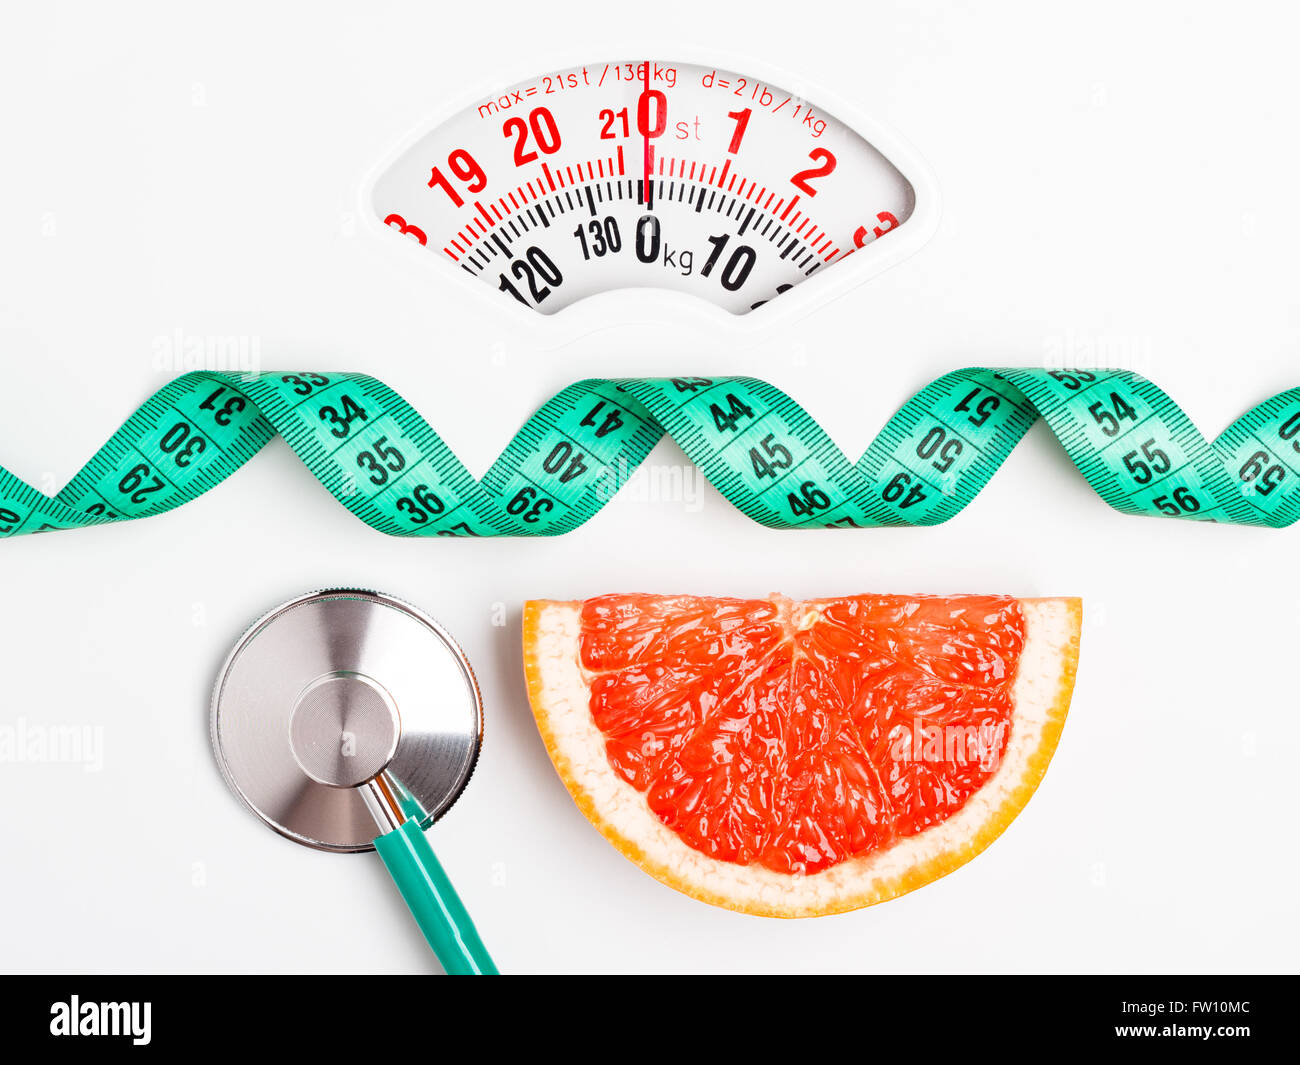 Ernährung gesunde Ernährung Gewicht Steuerungskonzept. Grapefruit mit Messung der Band und Stethoskop auf weißen Schuppen Stockfoto